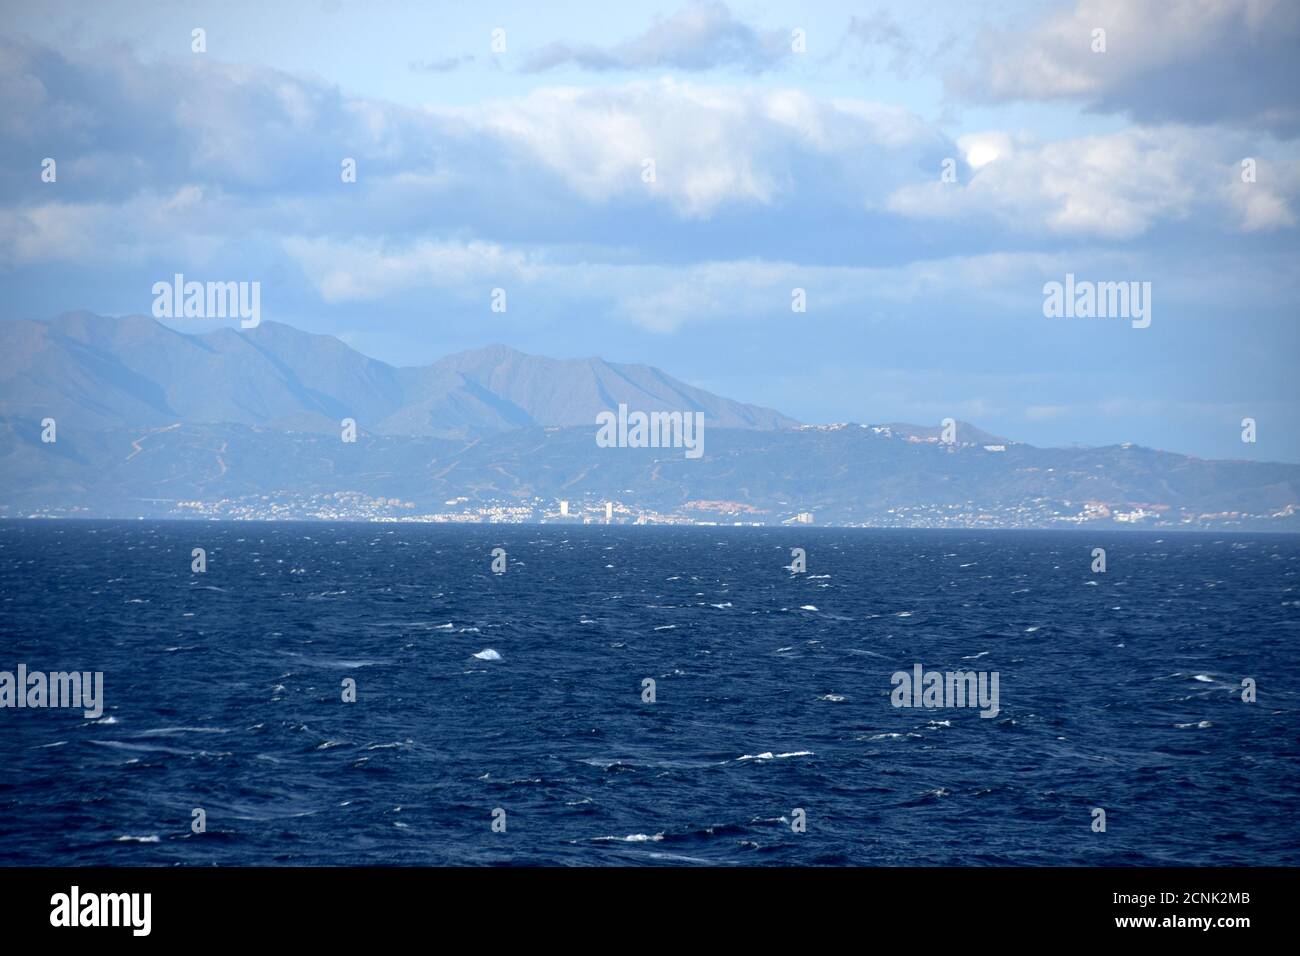 La costa mediterranea montagnosa del Marocco dietro lo stretto di Gibilterra con il paesaggio urbano durante il tempo ventoso sovrastato con il mare moderatamente ruvido. Foto Stock